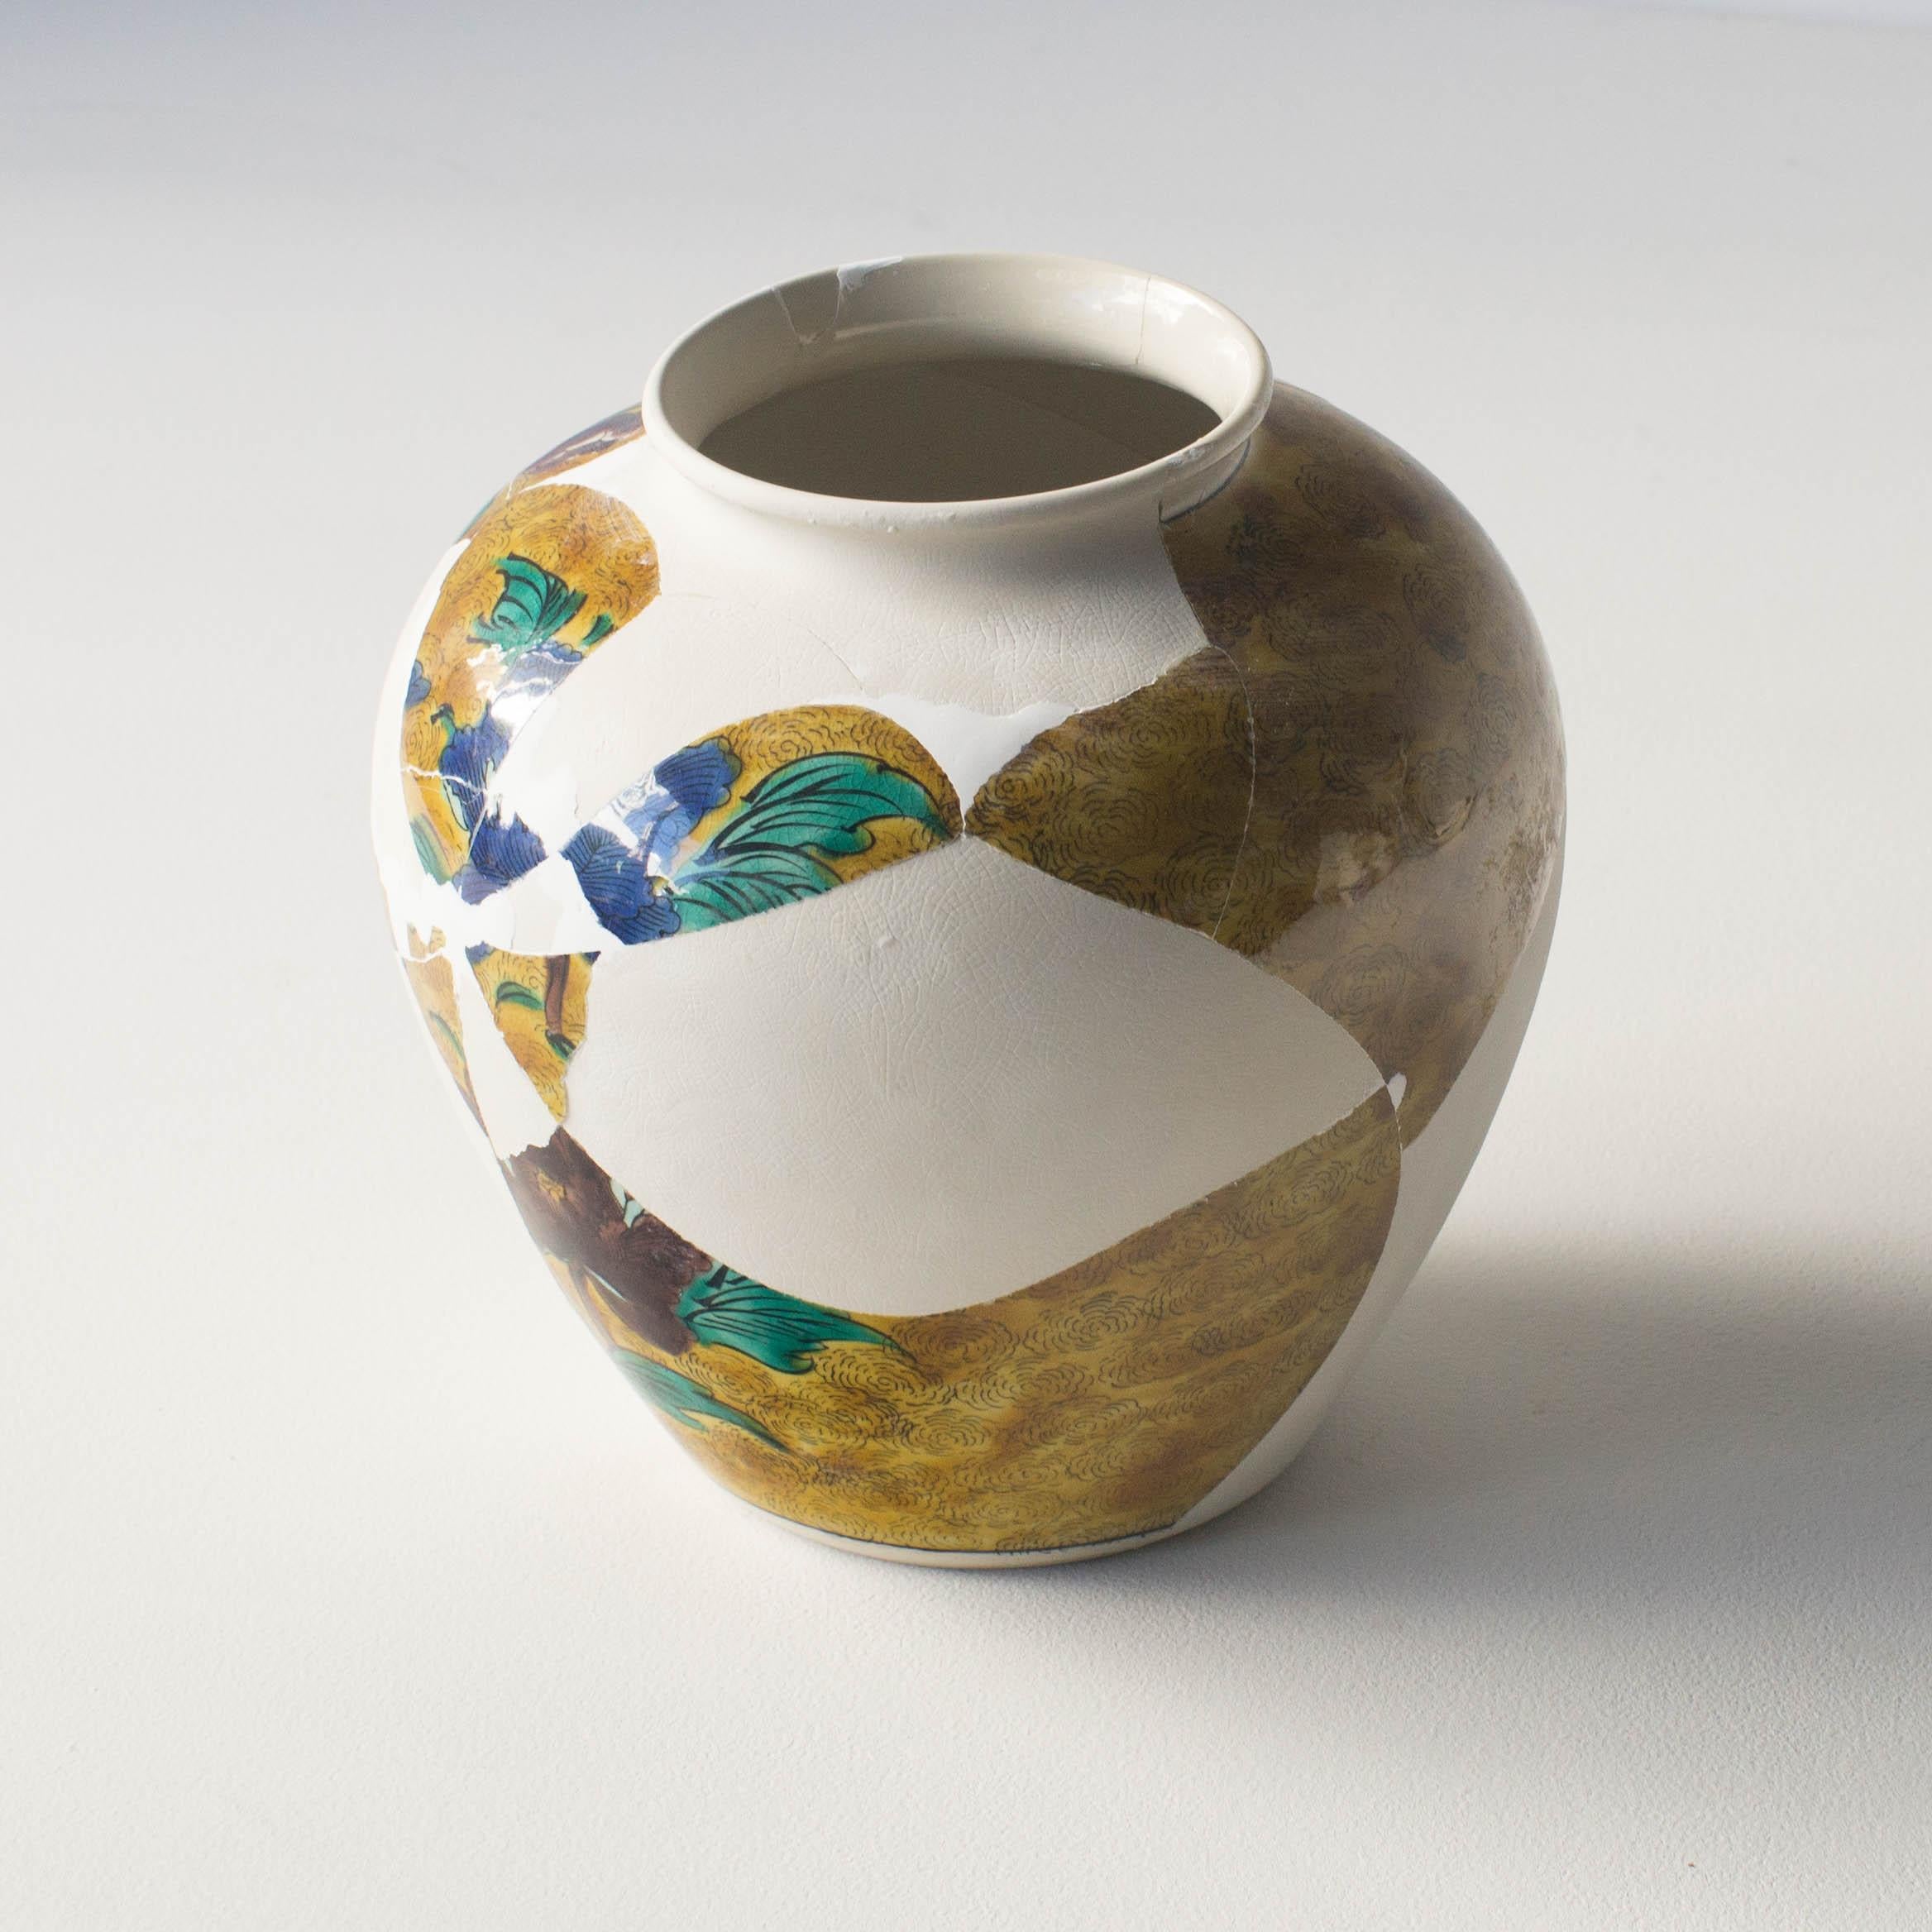 Cette série de céramiques est une œuvre unique de Norihiko Terayama. Il a cassé la céramique au début, et l'a transformée en de nombreux fragments. Il râpe quelques fragments
et faire sortir leurs motifs de la surface. Il leur a redonné leur forme